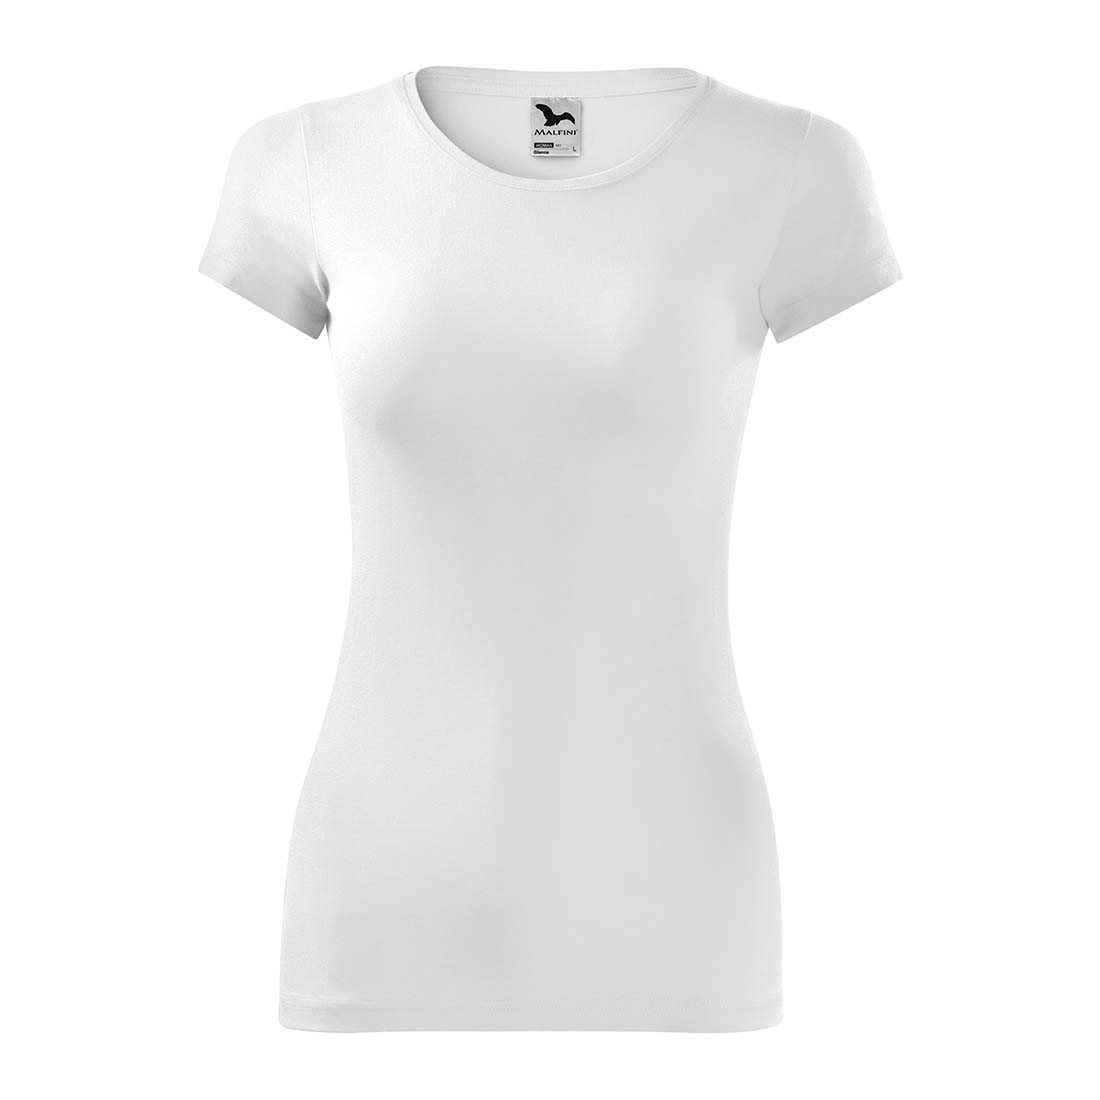 Tee-shirt pour femmes - Les vêtements de protection